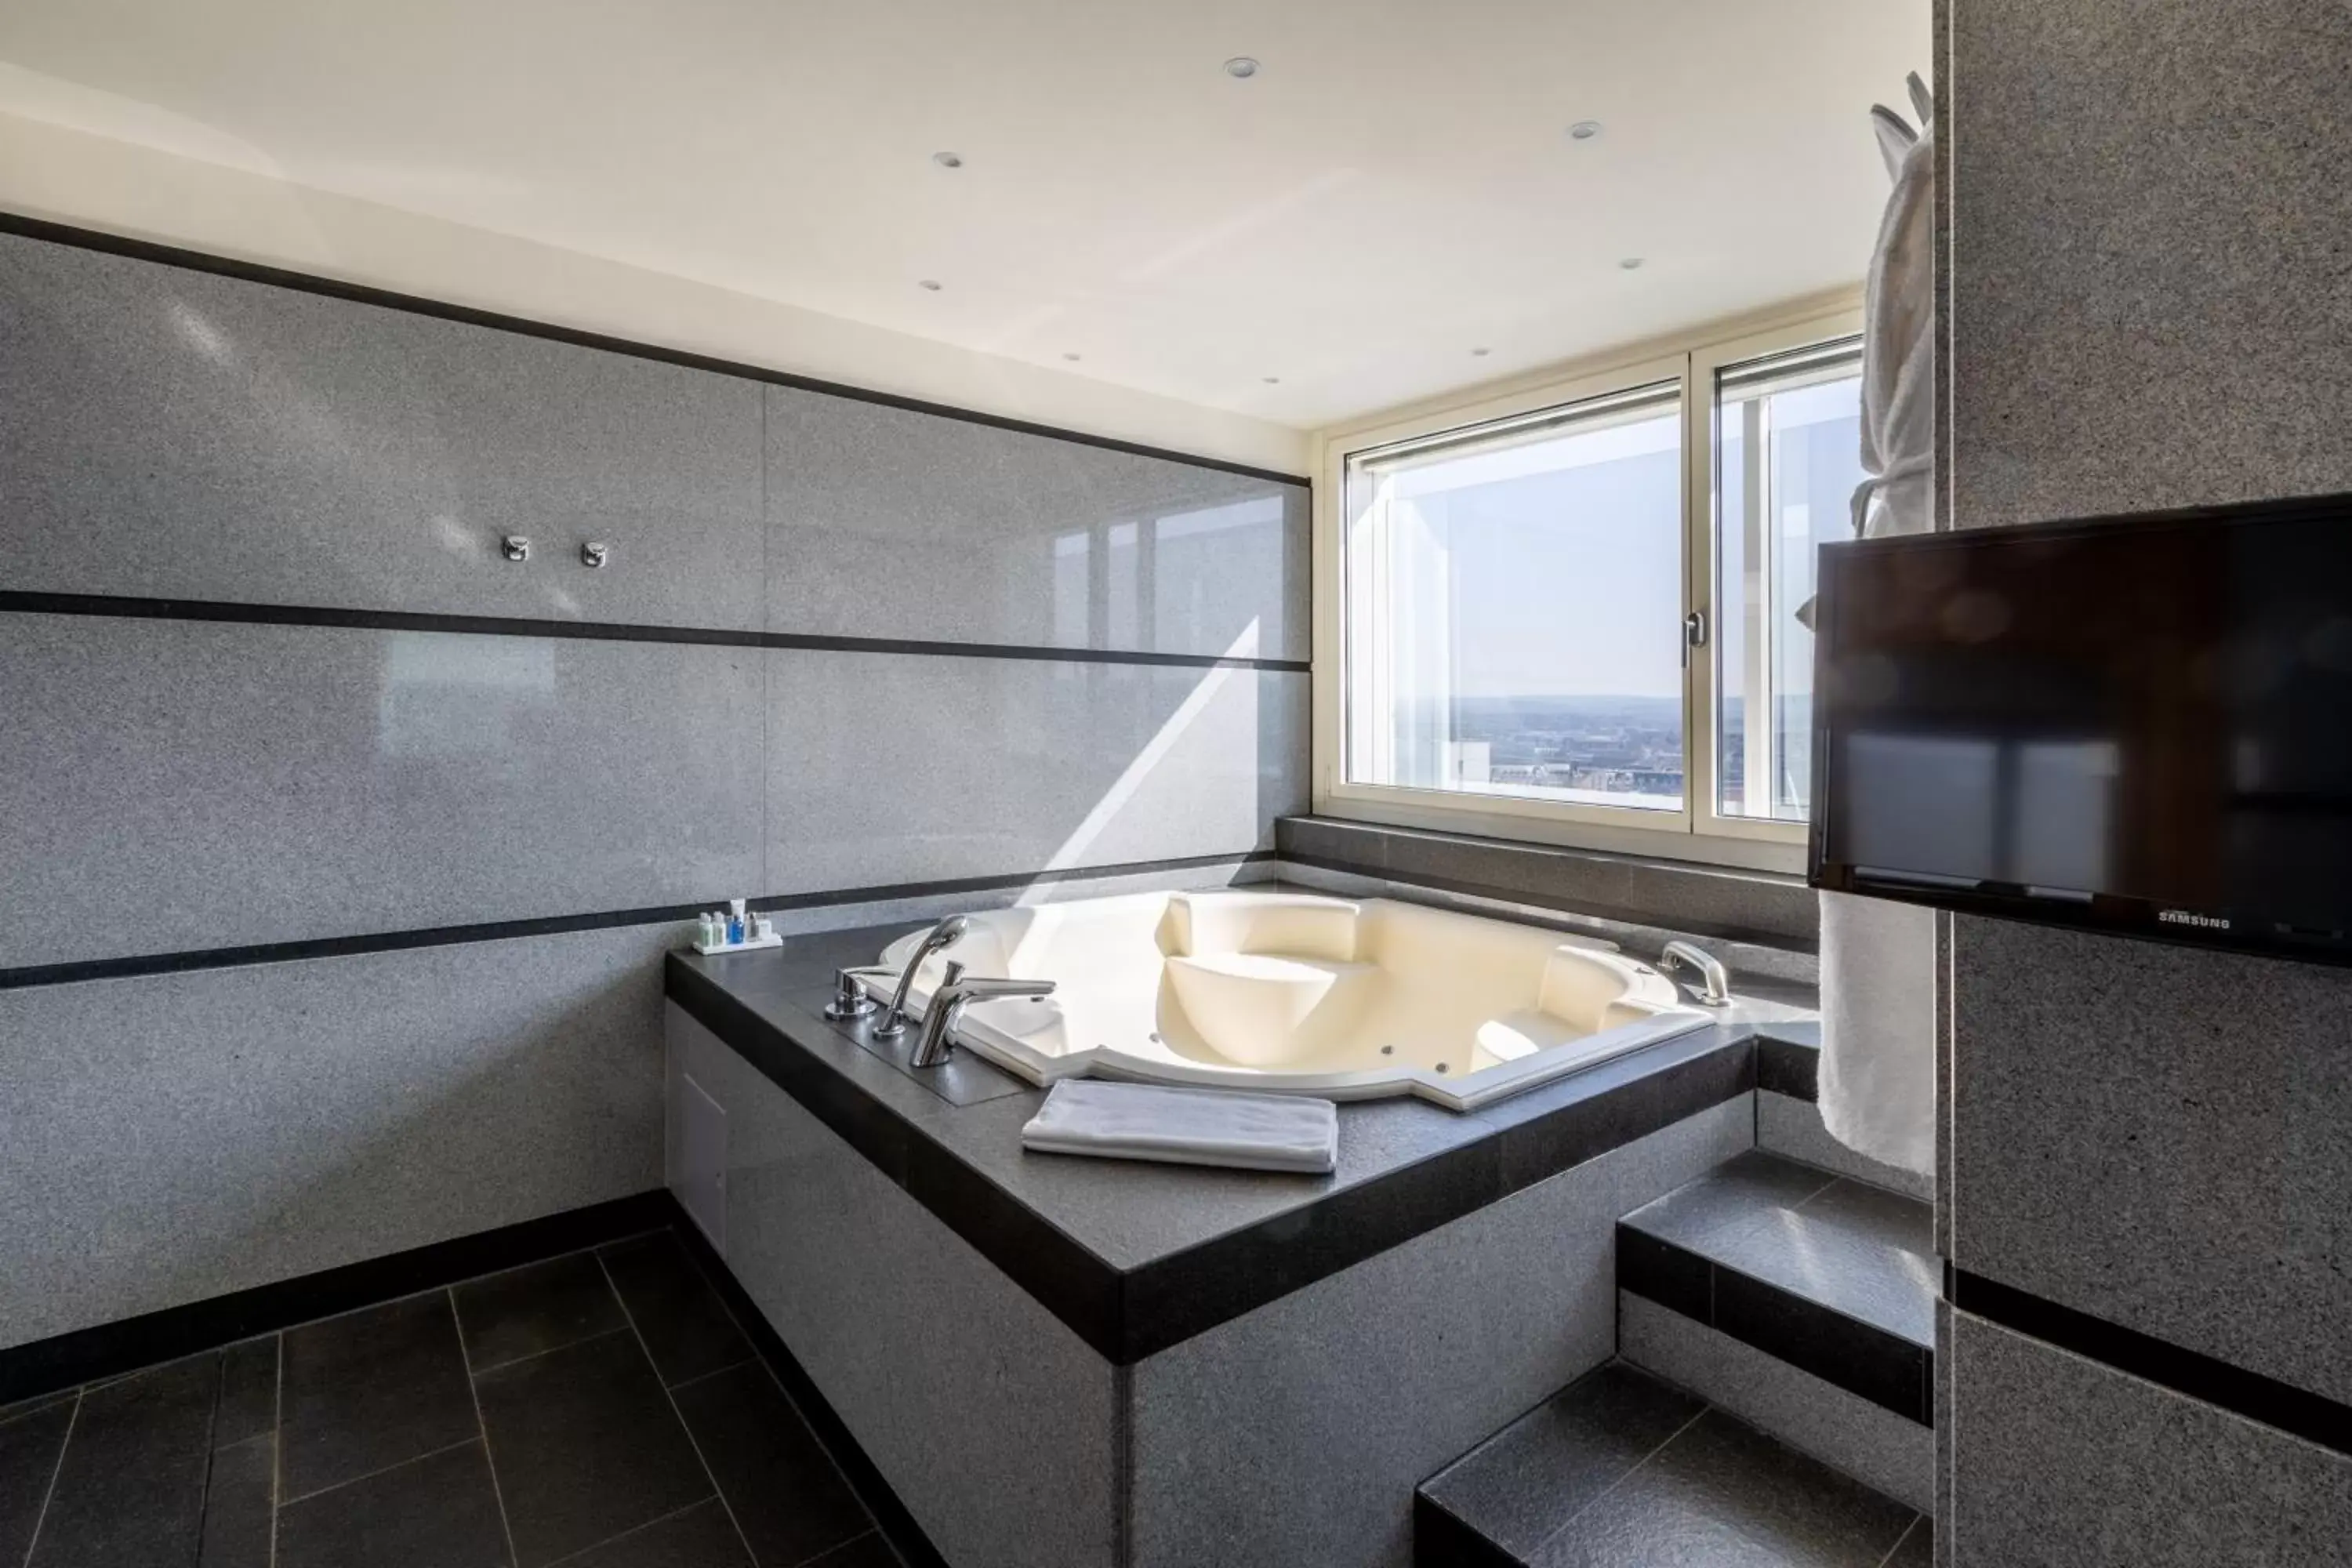 Hot Tub, Bathroom in Radisson Blu Hotel Erfurt